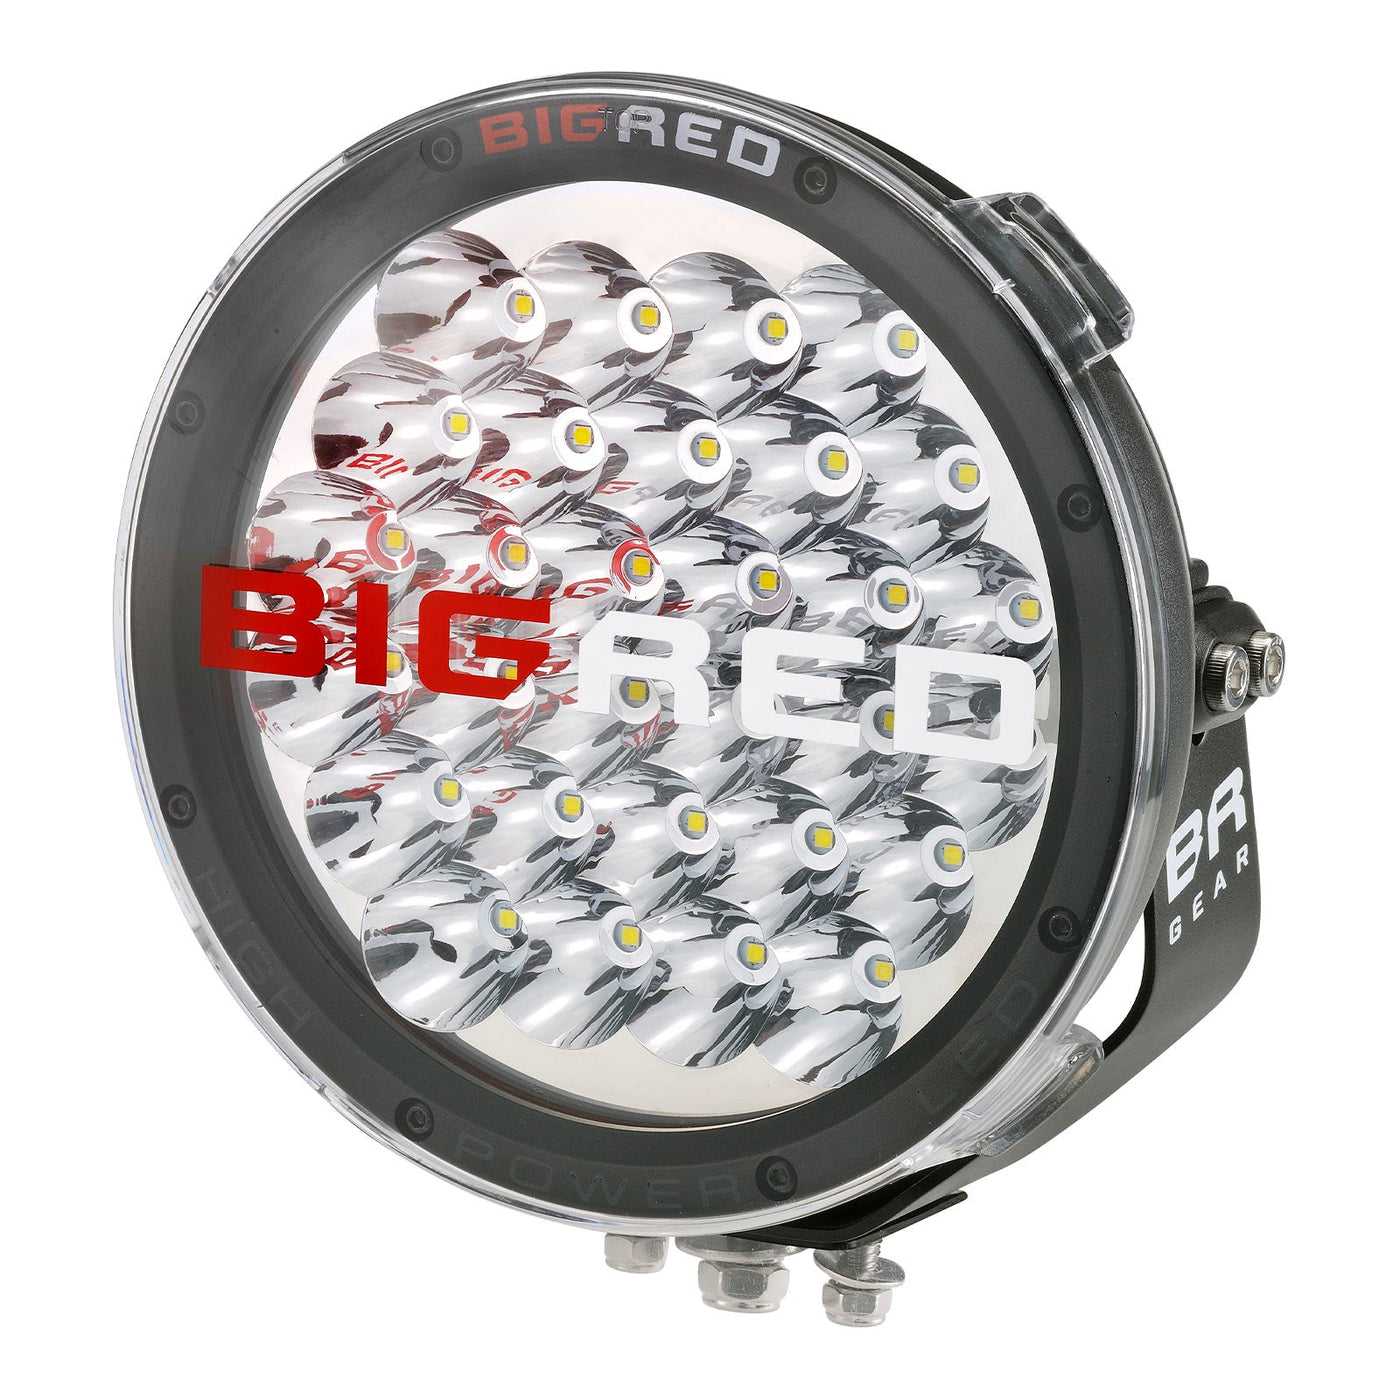 9 Inch BRG Driving Light Starter Kit (PAIR W/HARNESS)